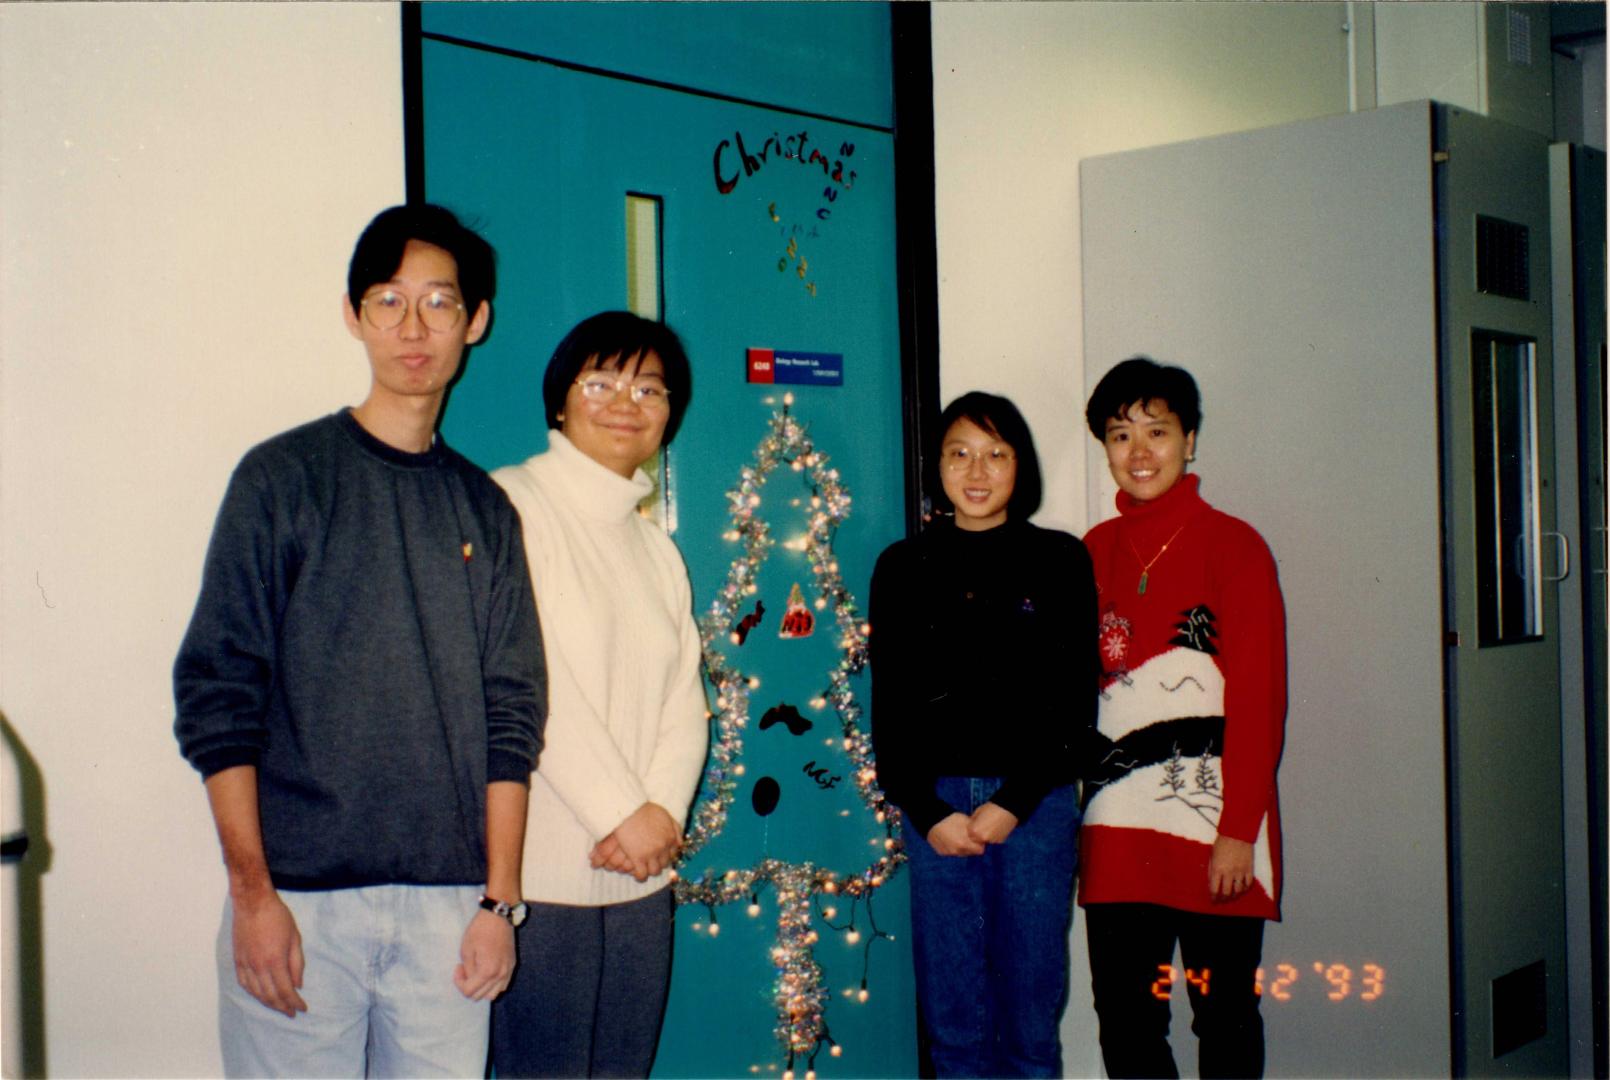 叶教授(右一)於1993年在她的实验室门前与研究团队成员合照，庆祝首个在科大度过的圣诞节，部分成员至今仍为叶教授的紧密战友。